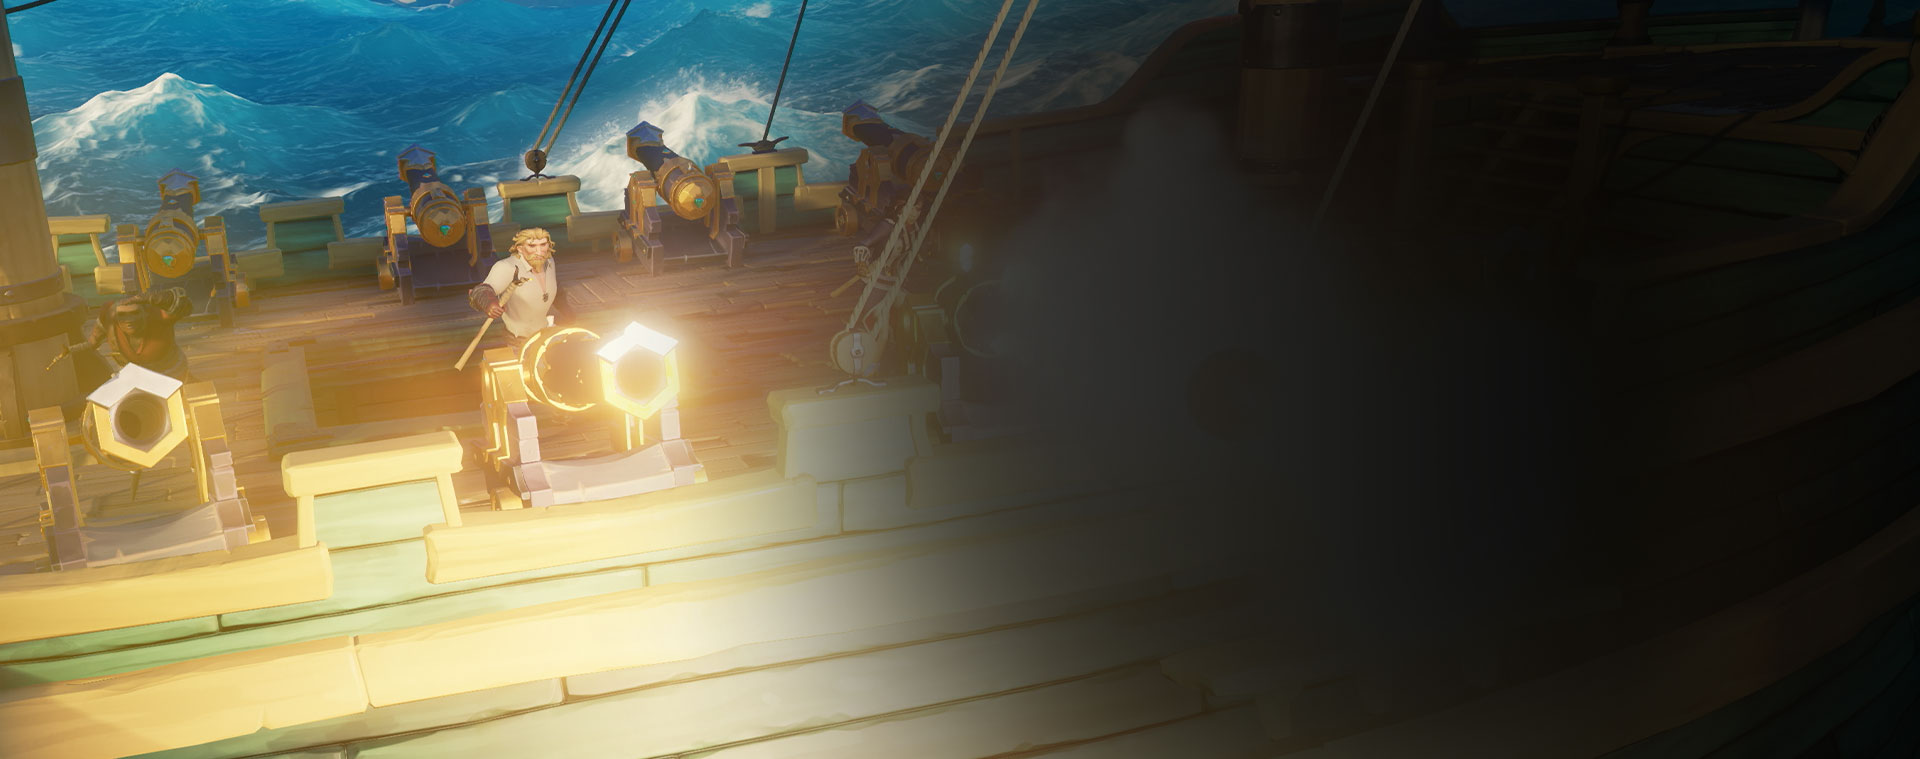 Personnages de Sea of Thieves tirant des canons depuis un navire